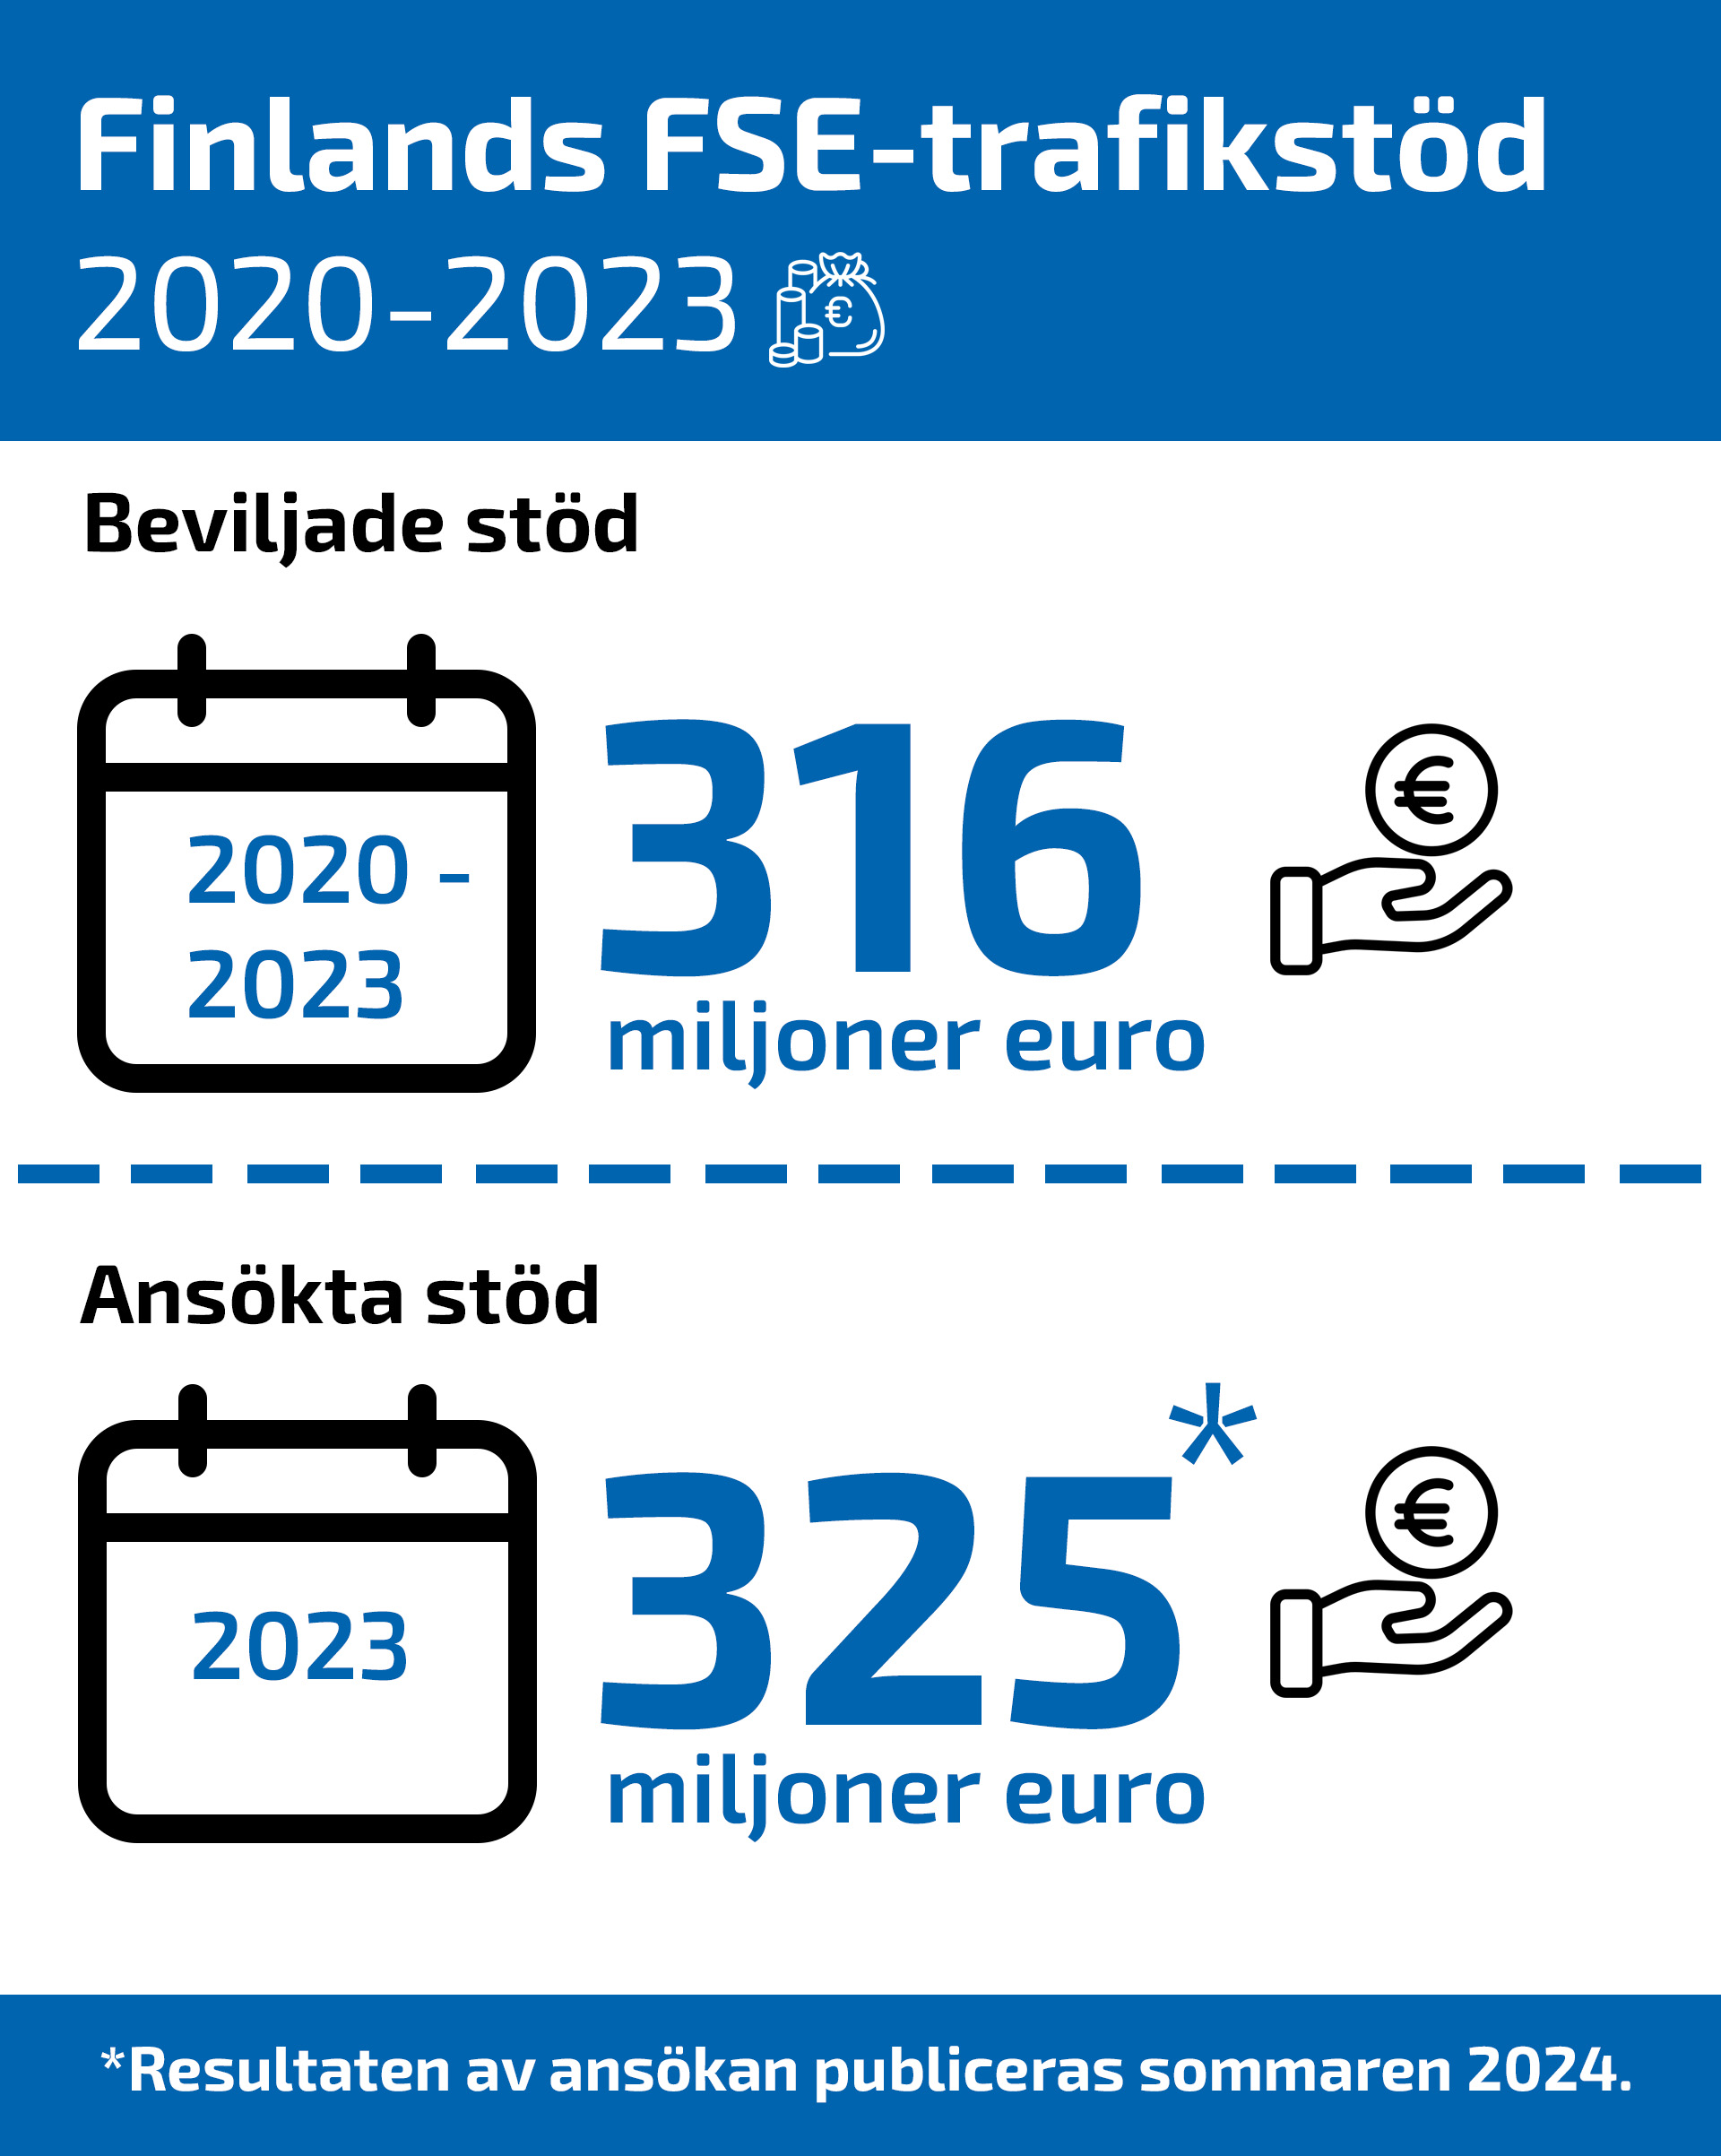 infographic om hur mycket FSE-trafikstöd Finland har gott 2020-2023 (316 miljoner euro) och ansökt 2023 (325 miljoner euro)